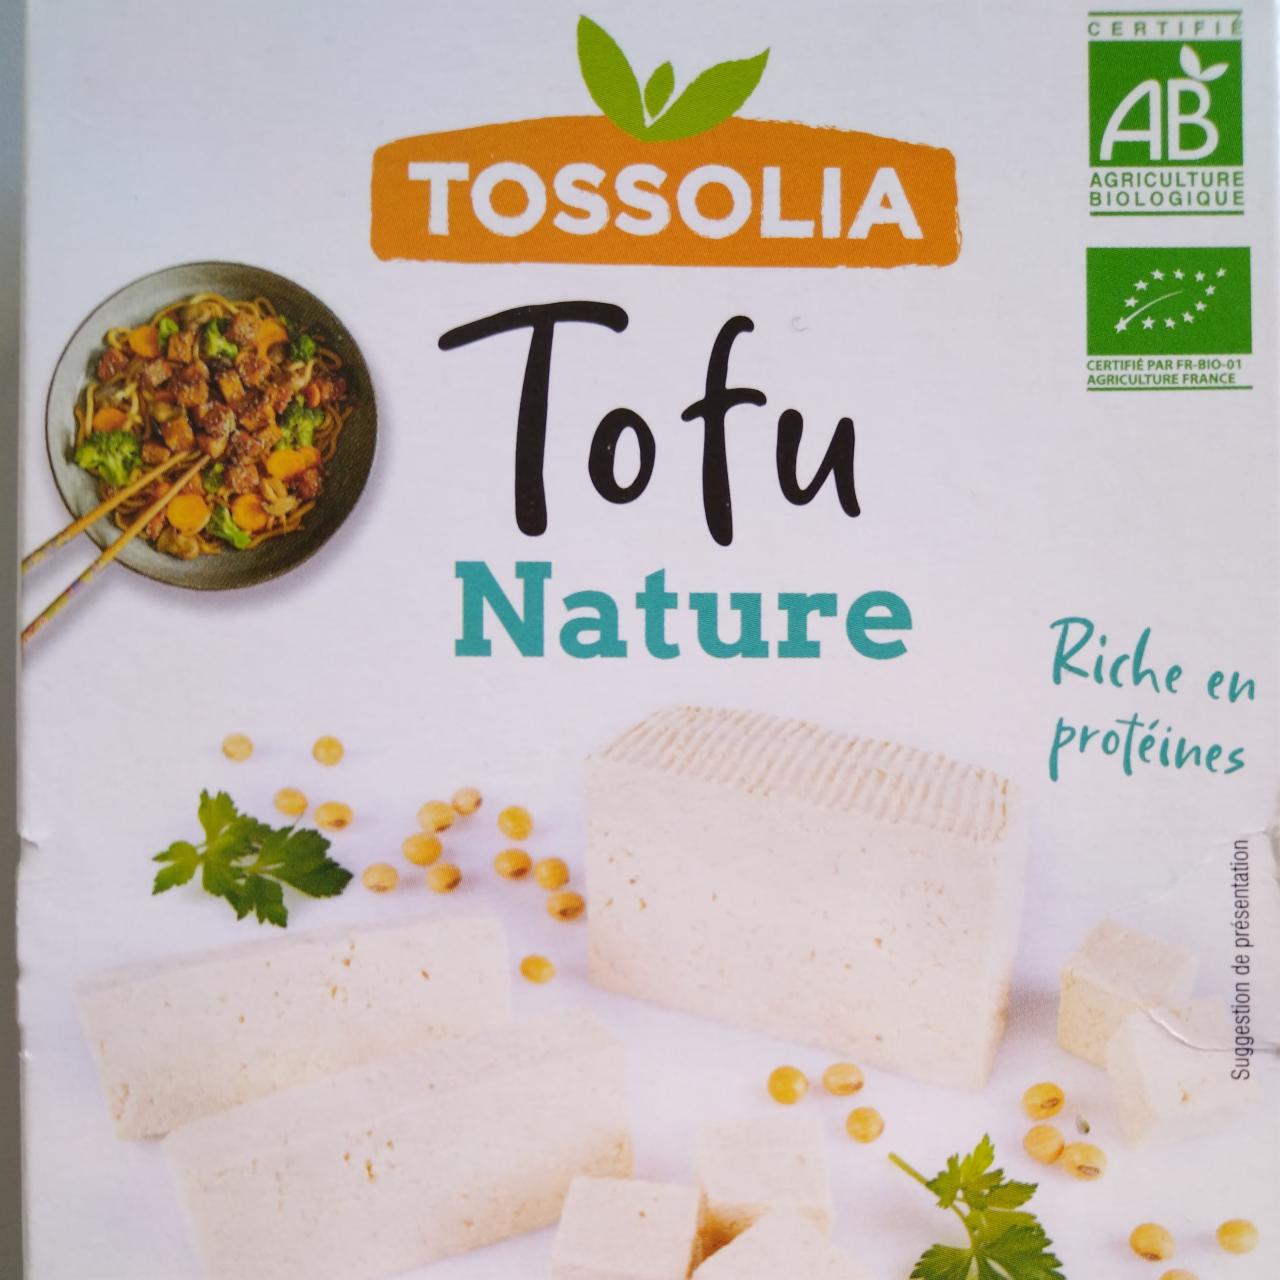 Fotografie - Tofu Nature Tossolia